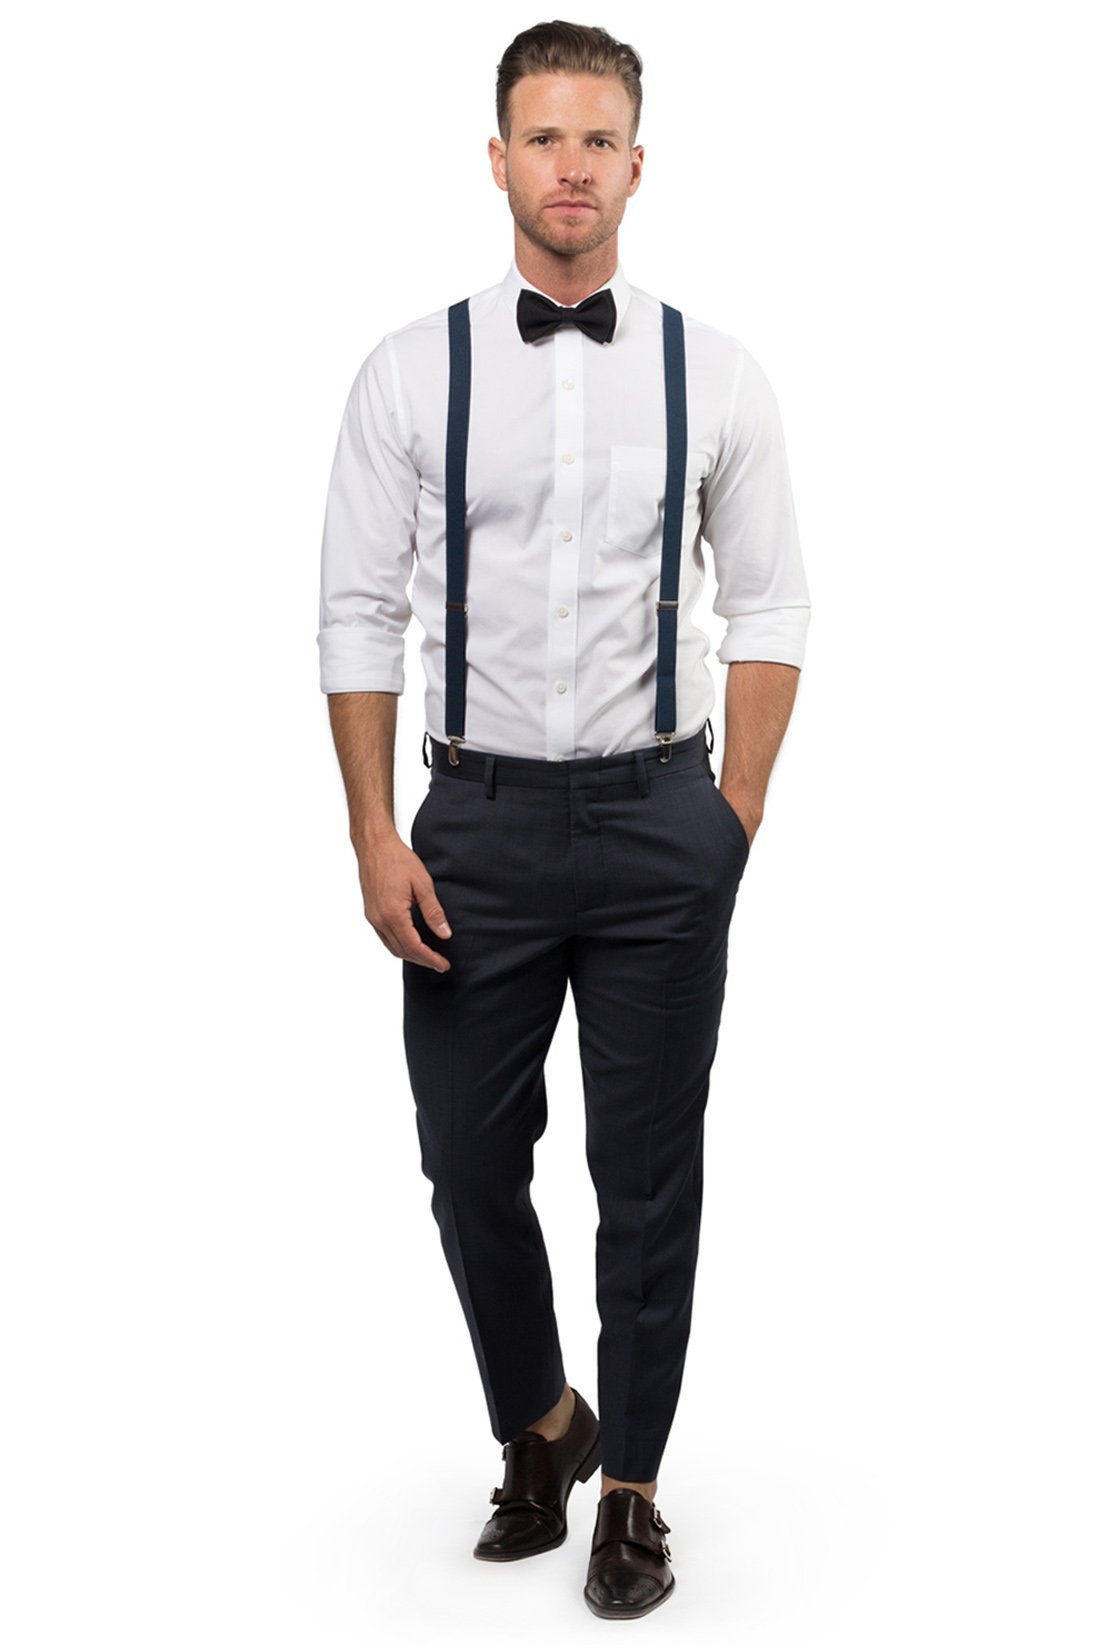 Navy Suspenders & Black Bow Tie - Baby to Adult Sizes– Armoniia